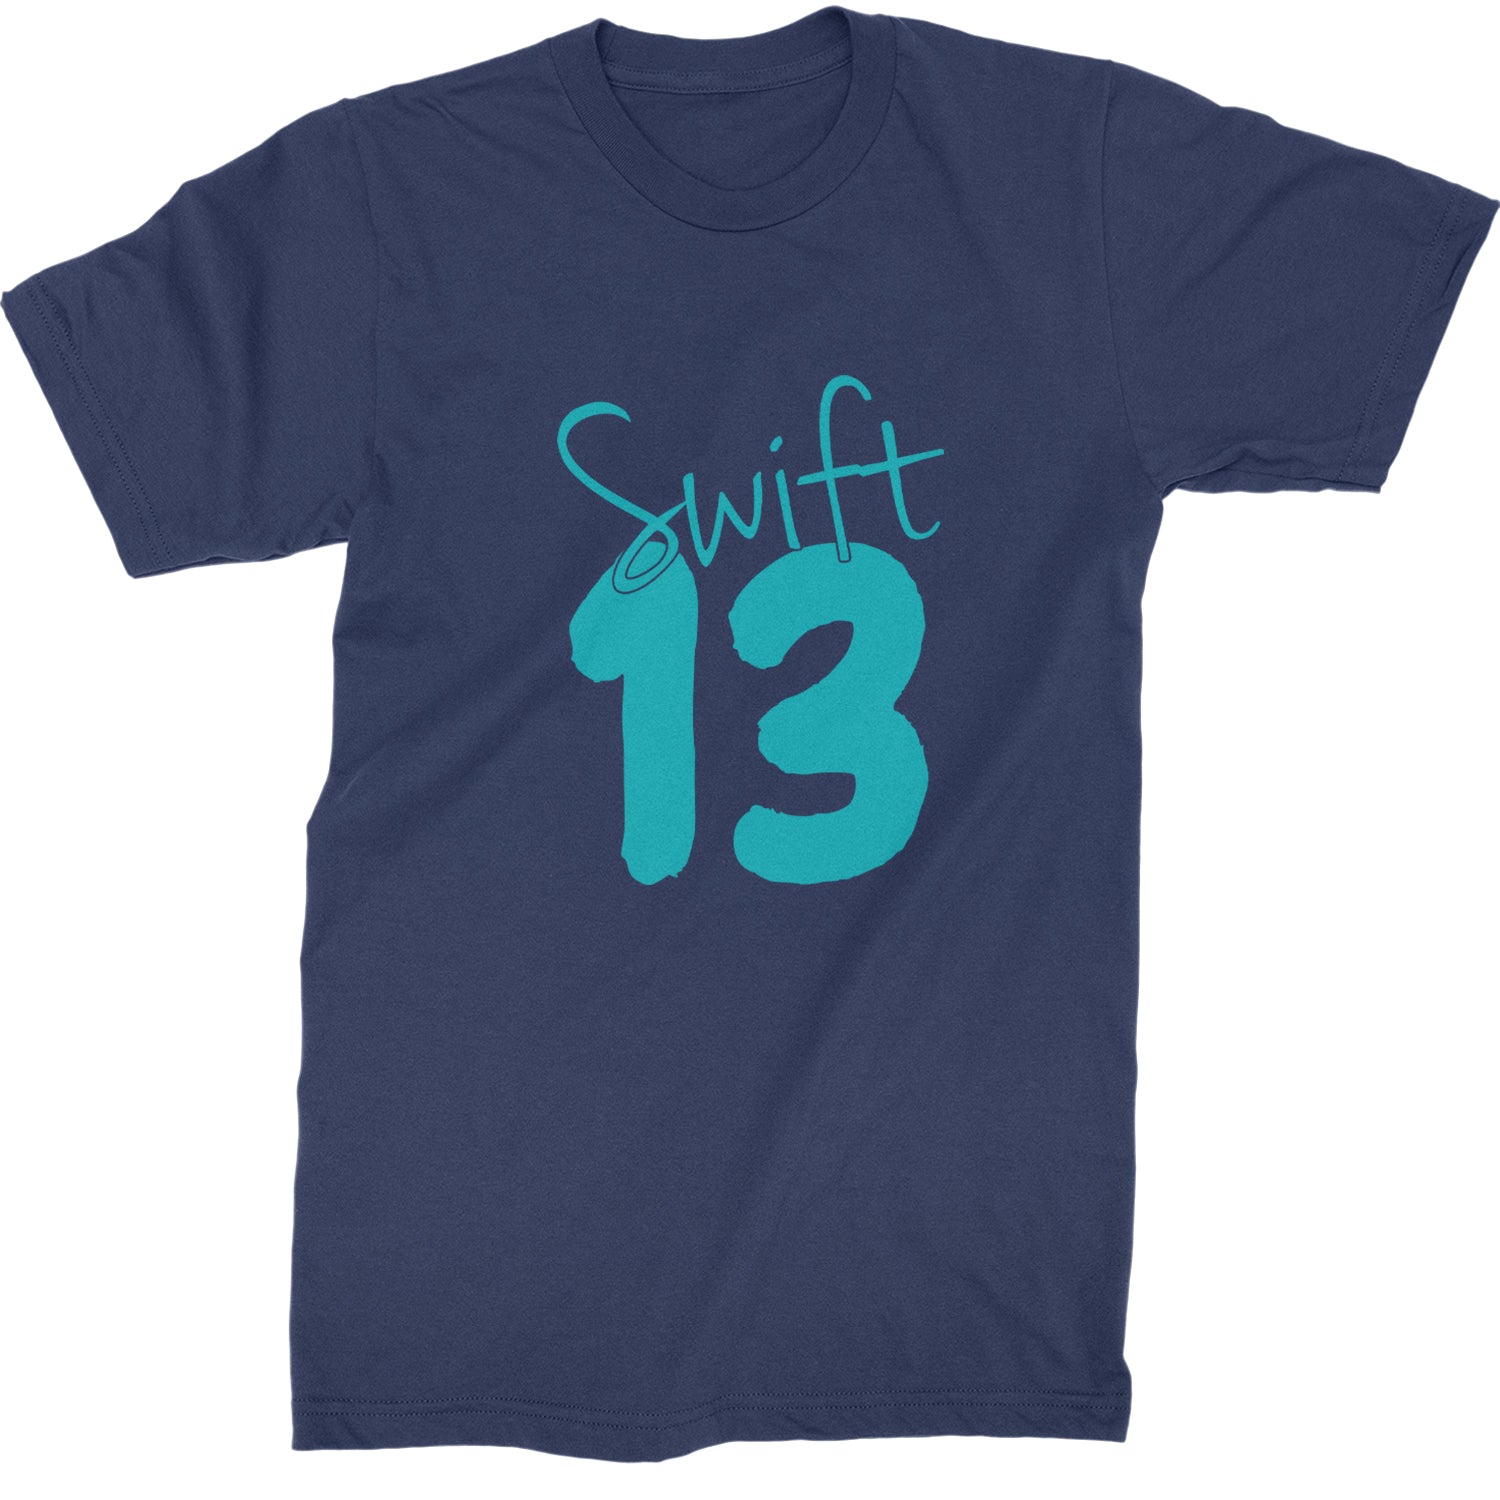 13 Swift 13 Lucky Number Era TTPD Mens T-shirt Navy Blue